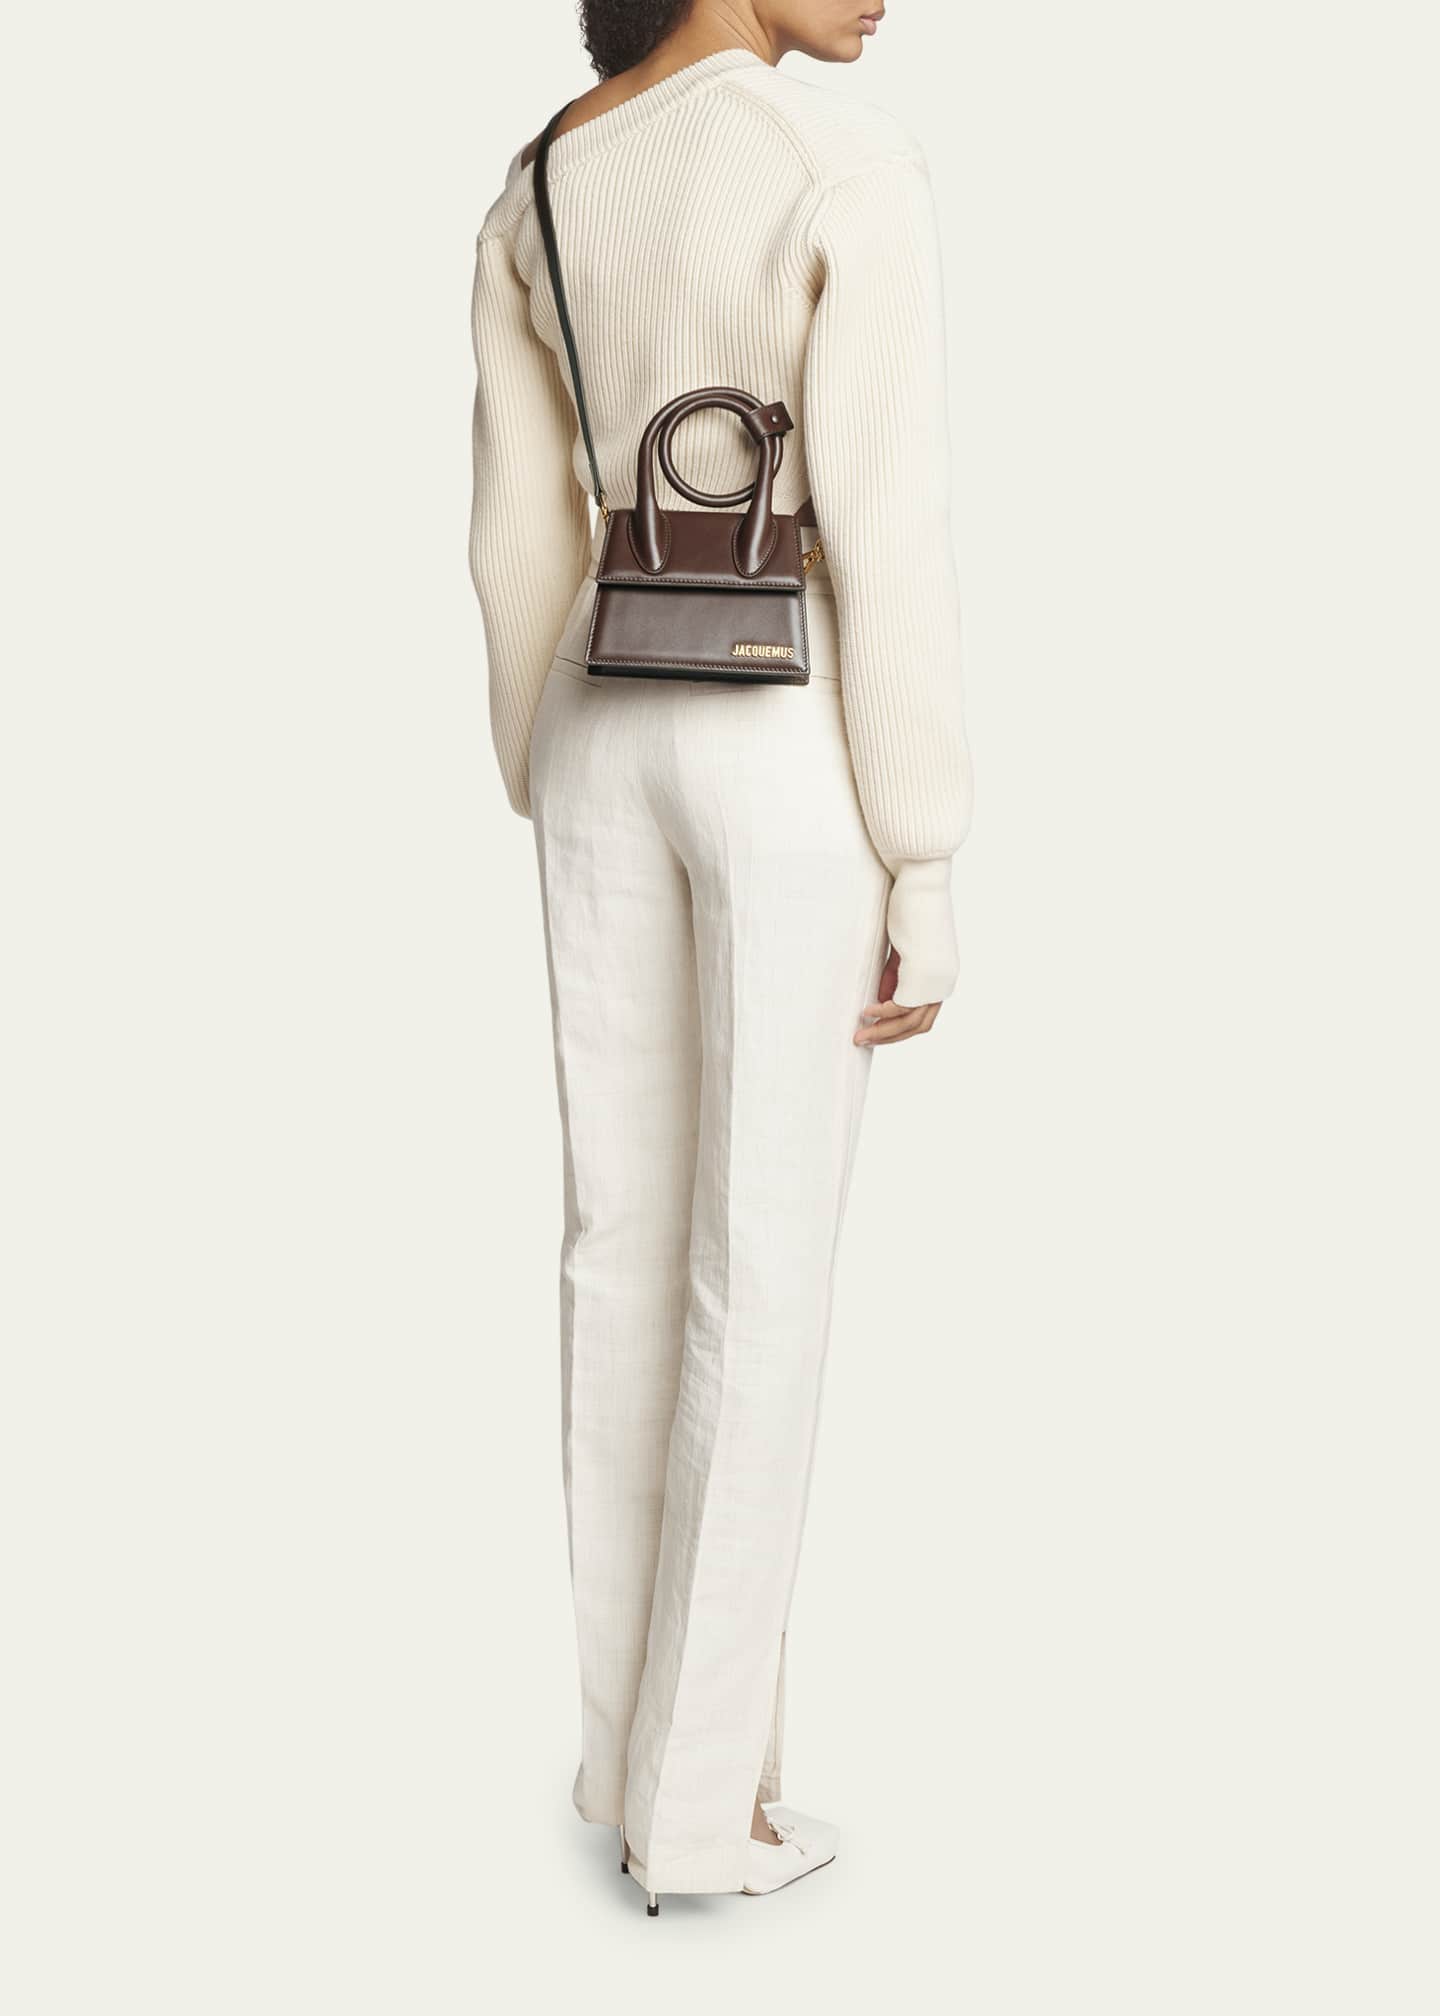 JACQUEMUS, Medium 'Le Chiquito' Leather Shoulder Bag